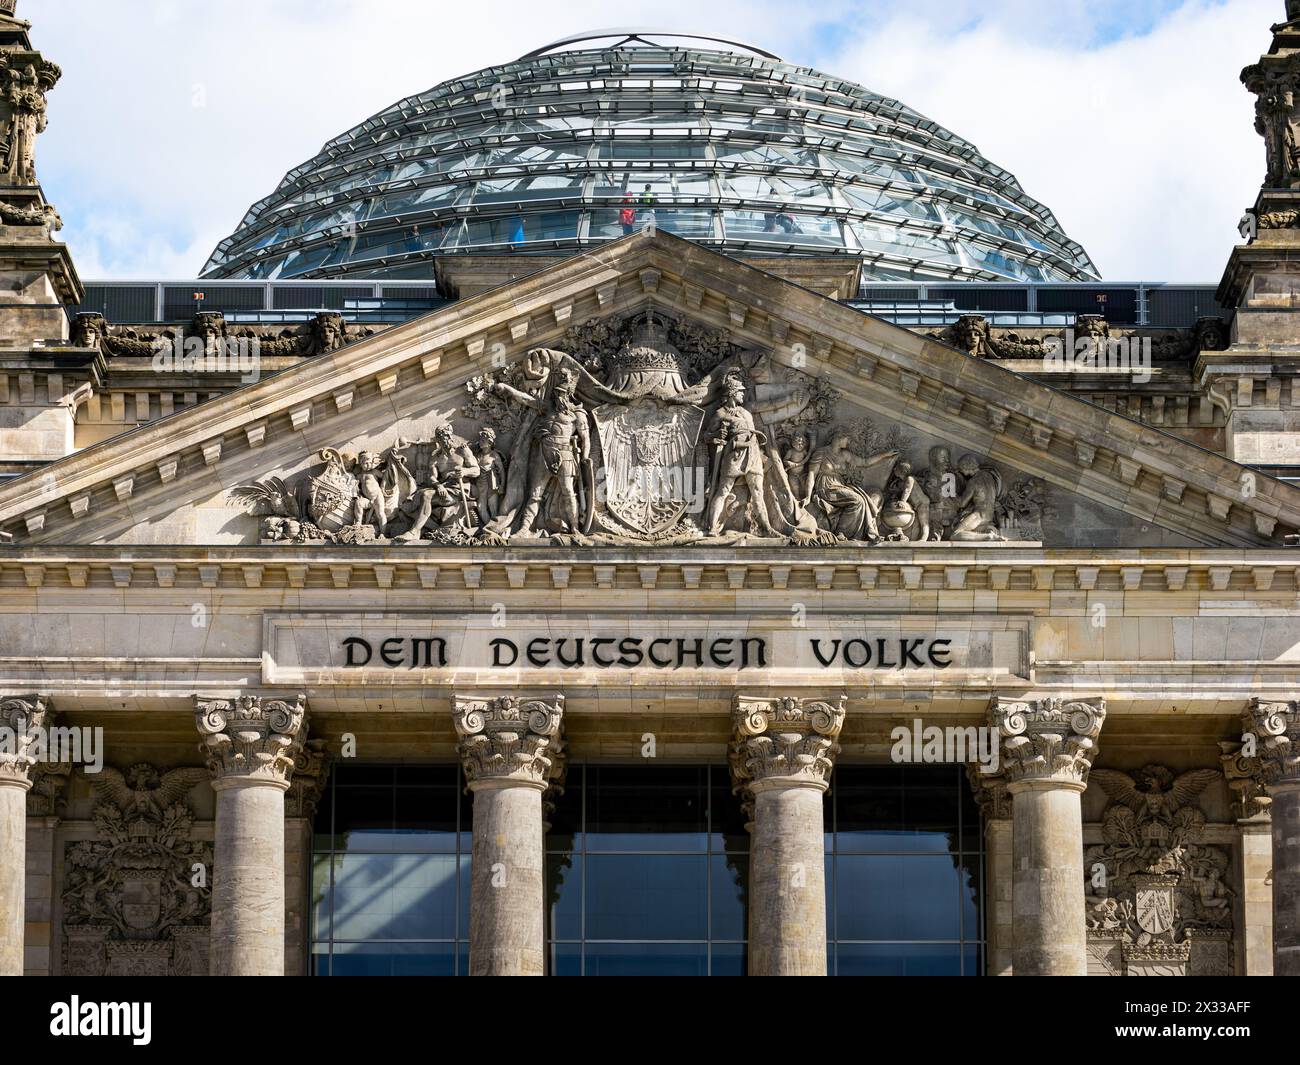 Facciata dell'edificio del Reichstag con l'iscrizione "DEM Deutschen Volke". Splendida architettura antica con una cupola di vetro come edificio governativo. Foto Stock